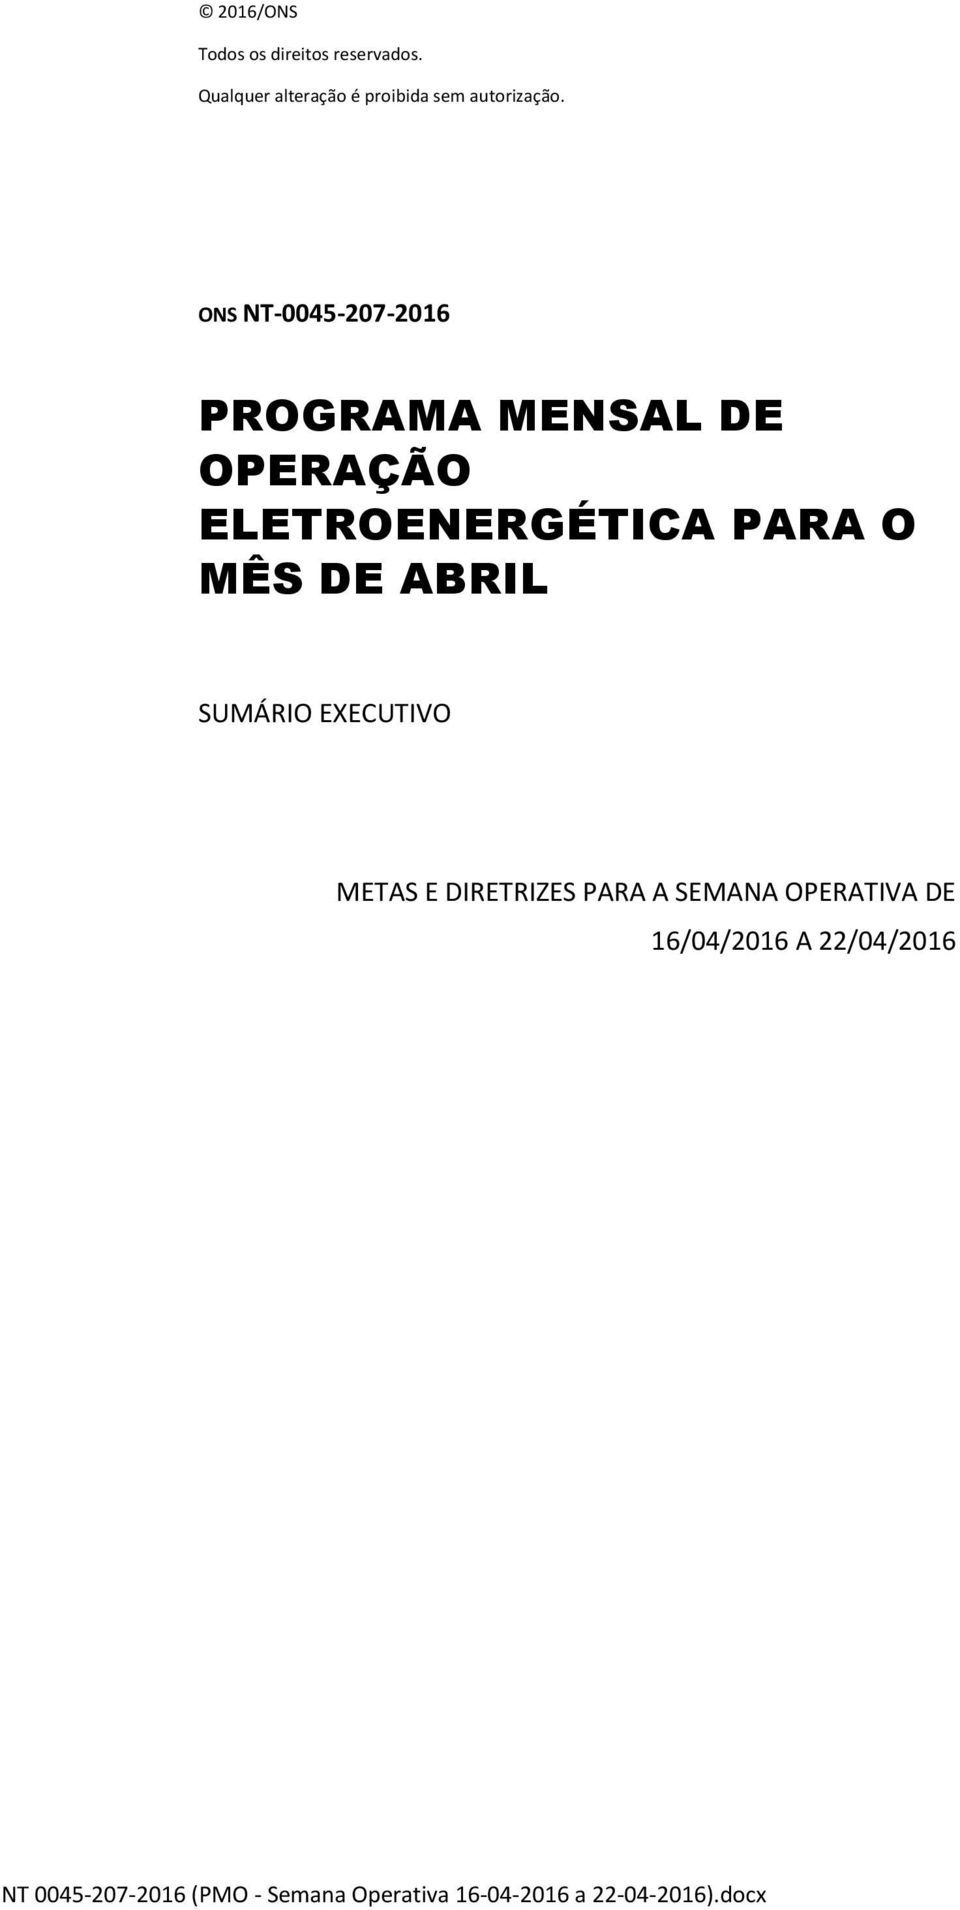 ONS NT-0045-207-2016 PROGRAMA MENSAL DE OPERAÇÃO ELETROENERGÉTICA PARA O MÊS DE